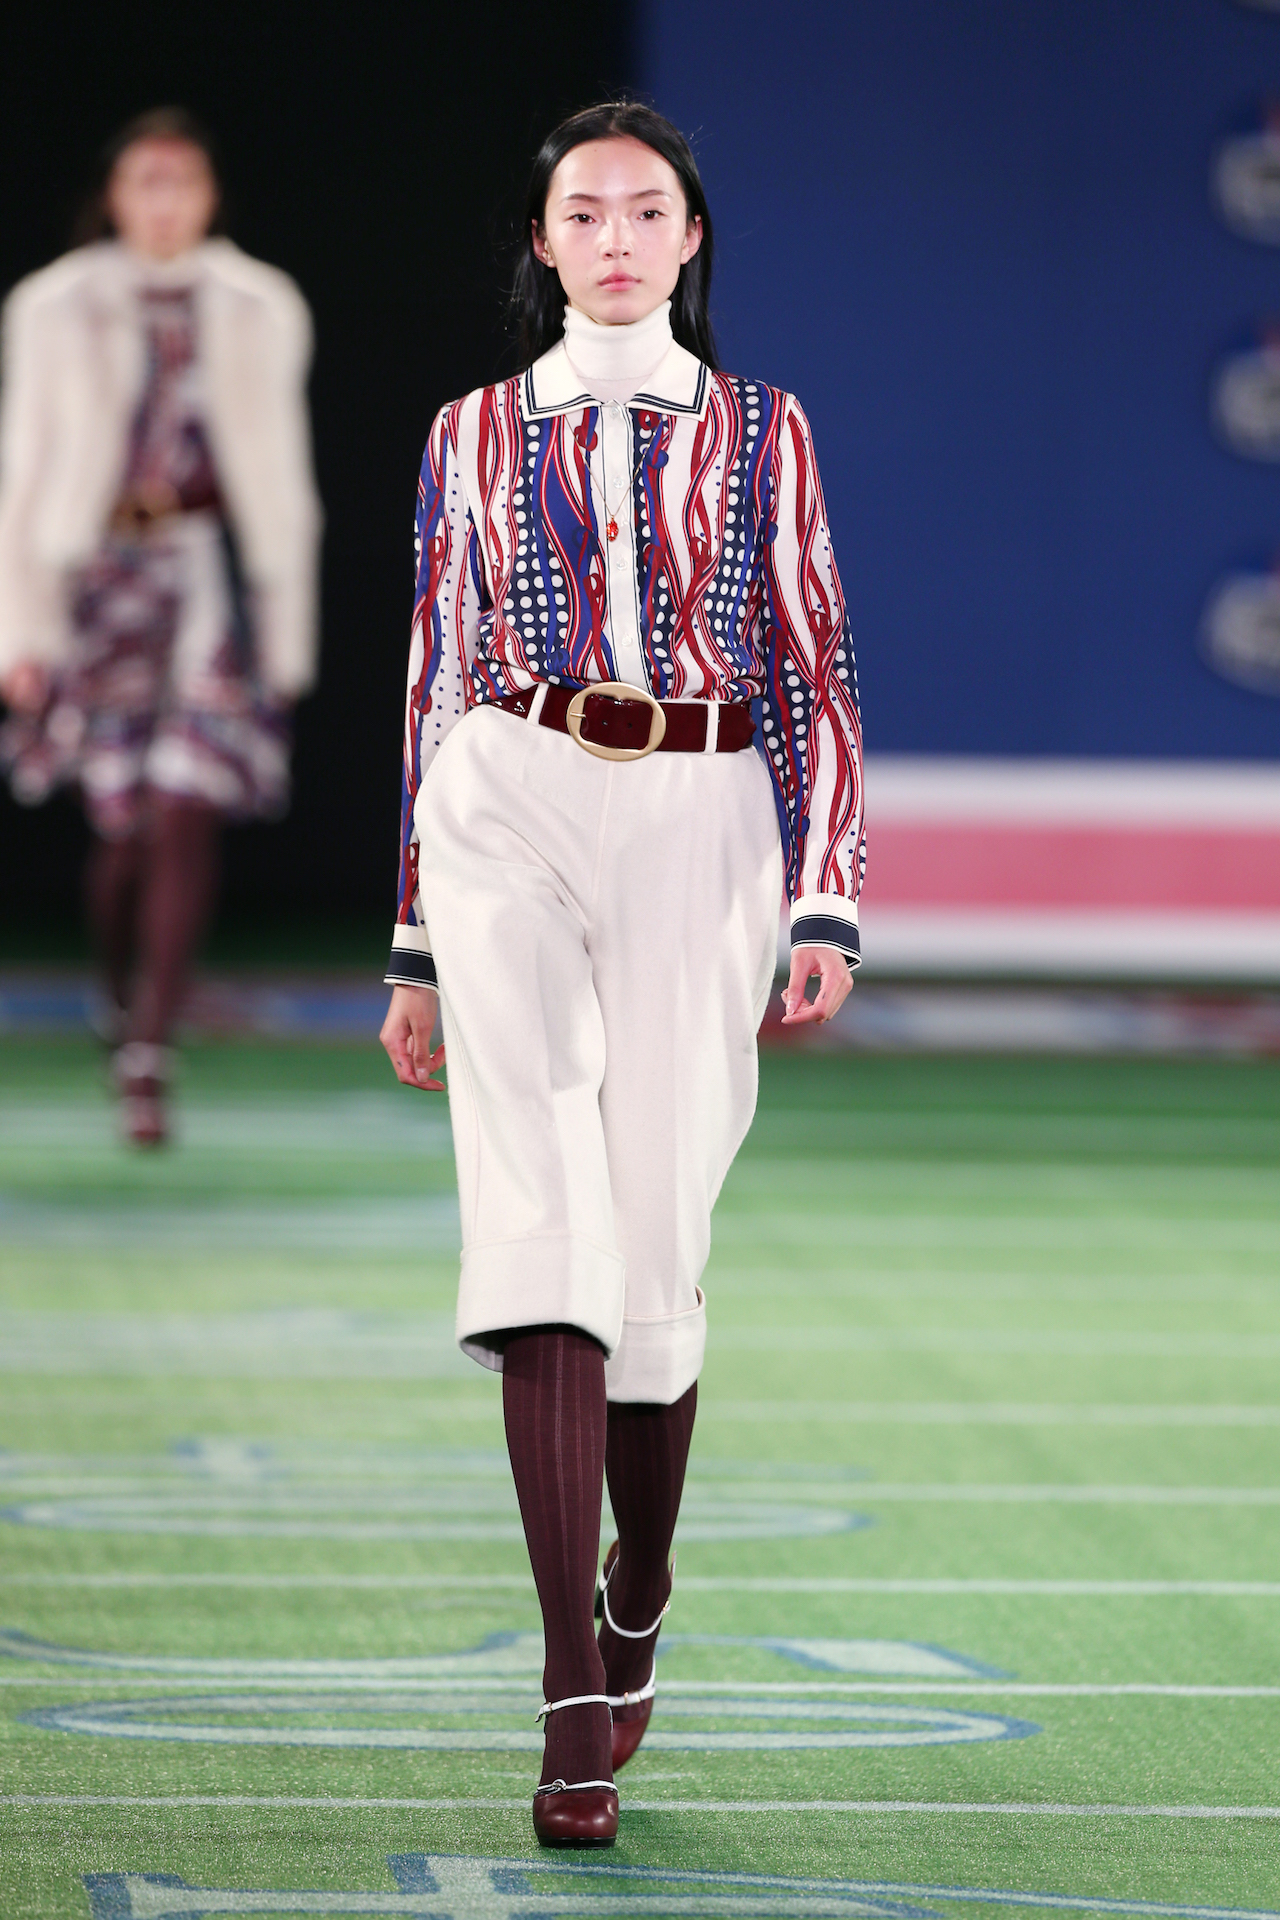 Tommy Hilfiger 2015 秋季系列于2 月在纽约时装周首次亮相，其设计灵感来自美式足球运动，将体育精神、学院风主题图案与Hilfiger经典运动装设计完美融合。此系列彰显了品牌30年来的设计传承，将创立之初的美式经典运动元素与现代运动风格奢华交融。